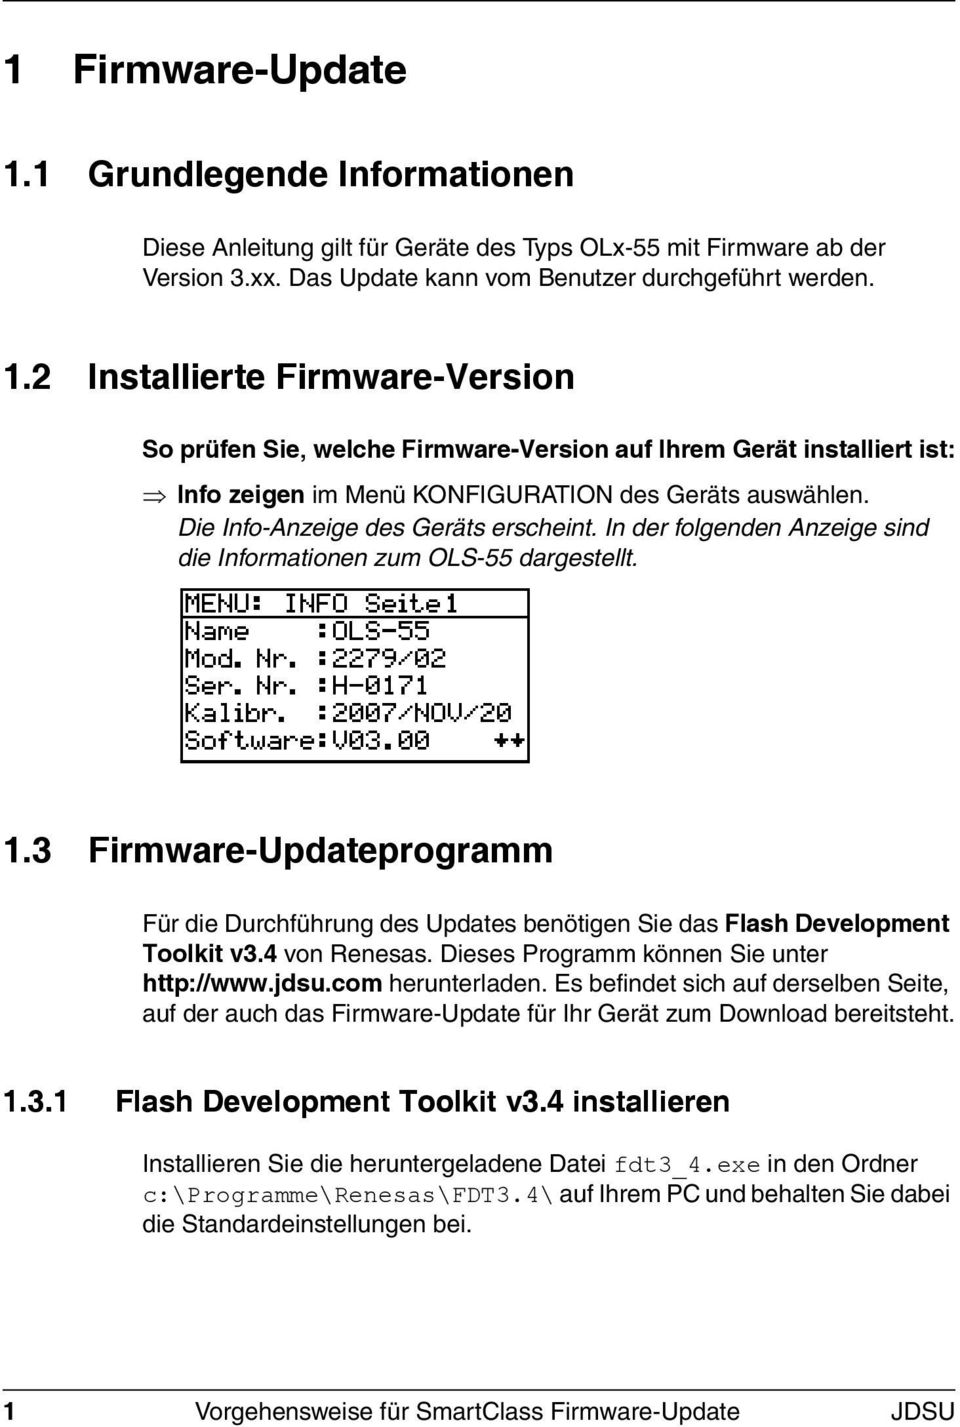 3 Firmware-Updateprogramm Für die Durchführung des Updates benötigen Sie das Flash Development Toolkit v3.4 von Renesas. Dieses Programm können Sie unter http://www.jdsu.com herunterladen.